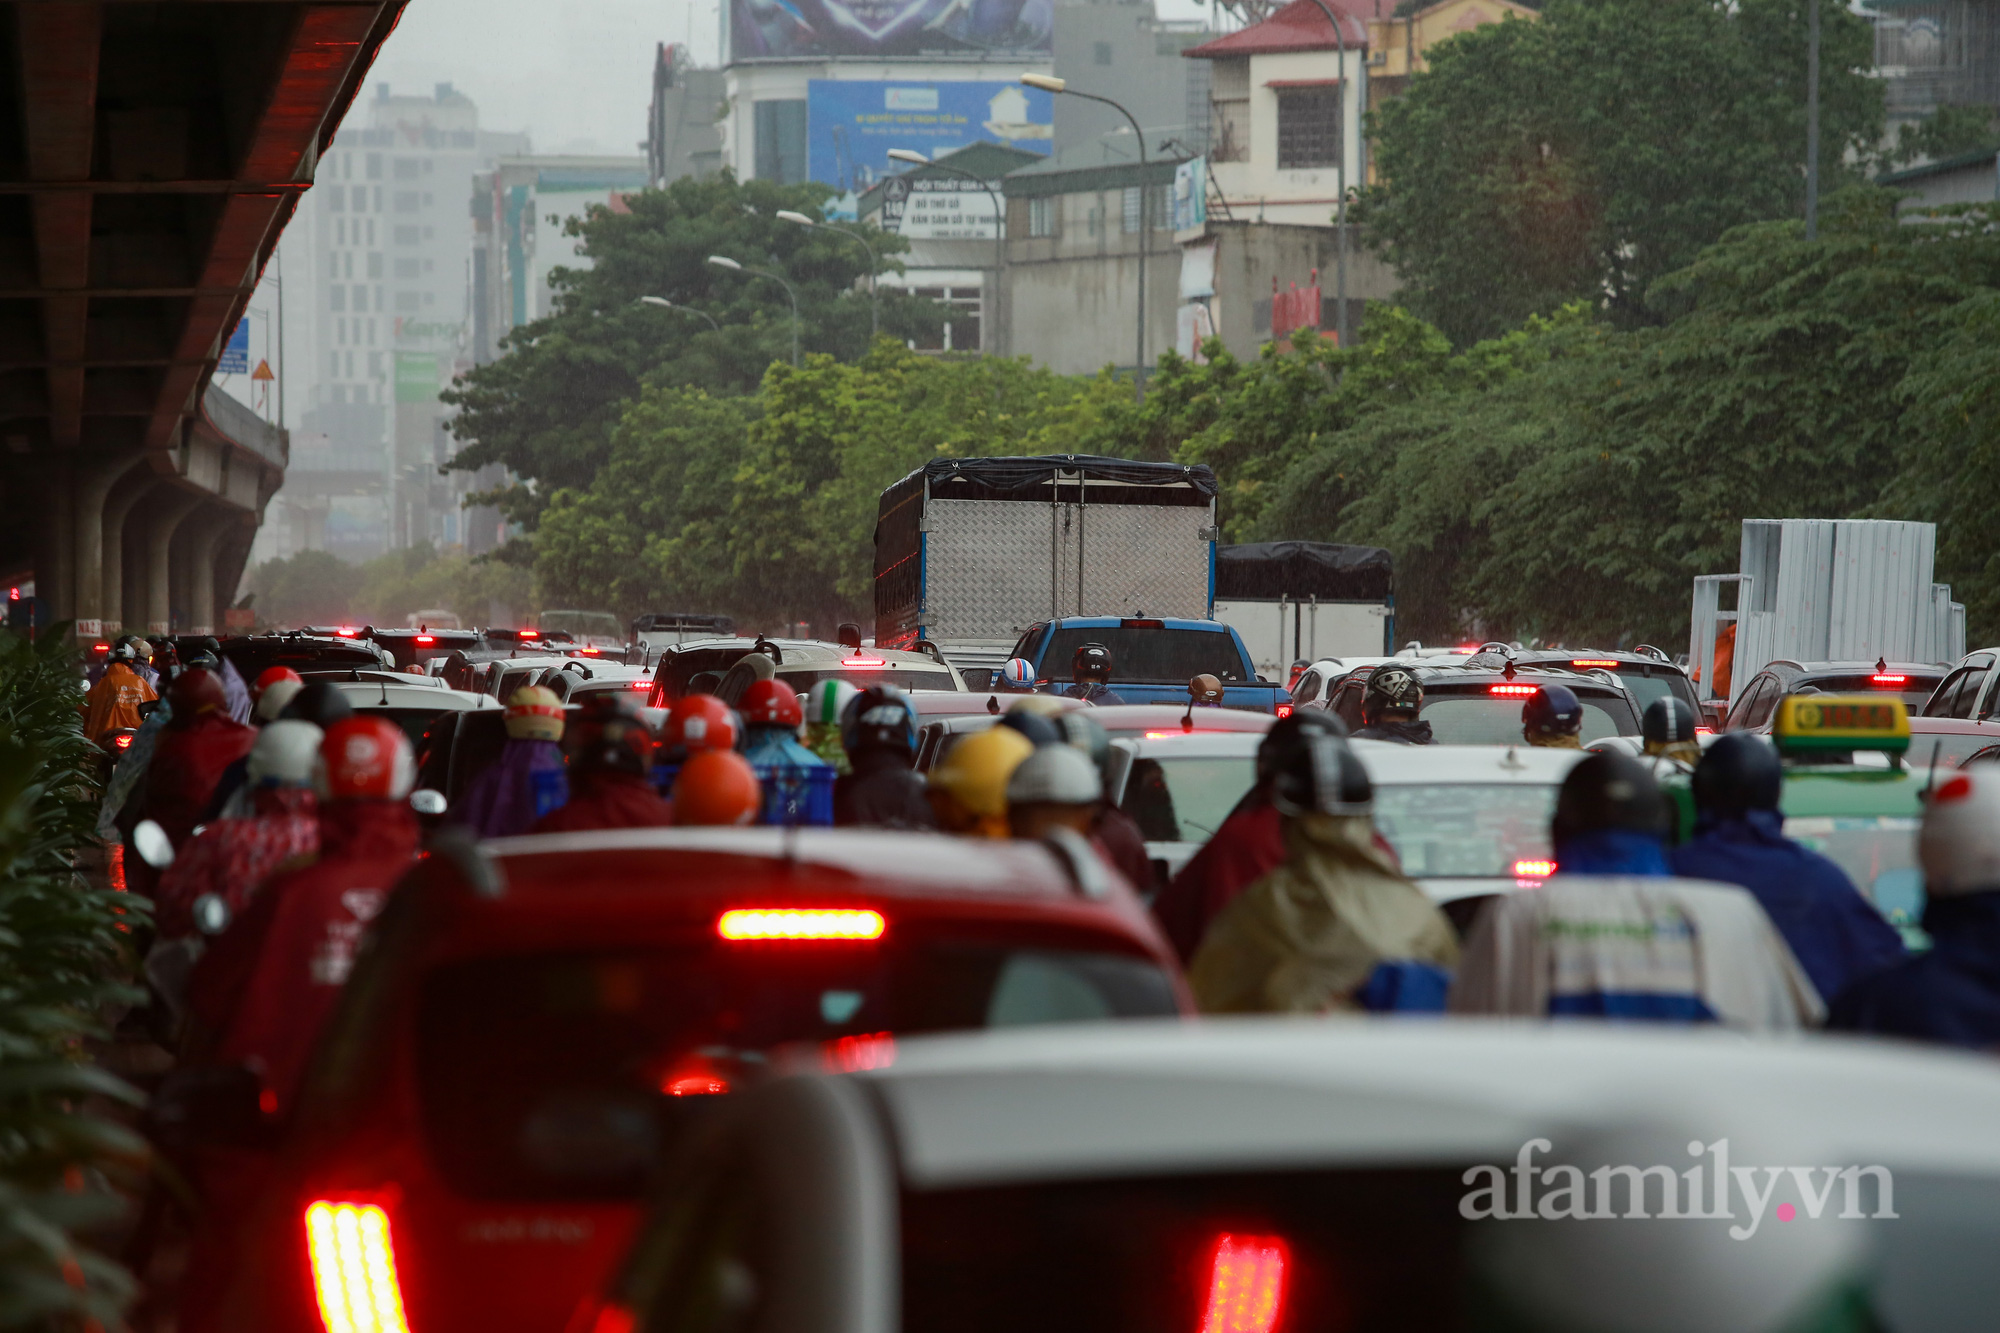 Đường phố ùn tắc, người Hà Nội vật lộn đi làm trong cơn mưa tầm tã - Ảnh 6.